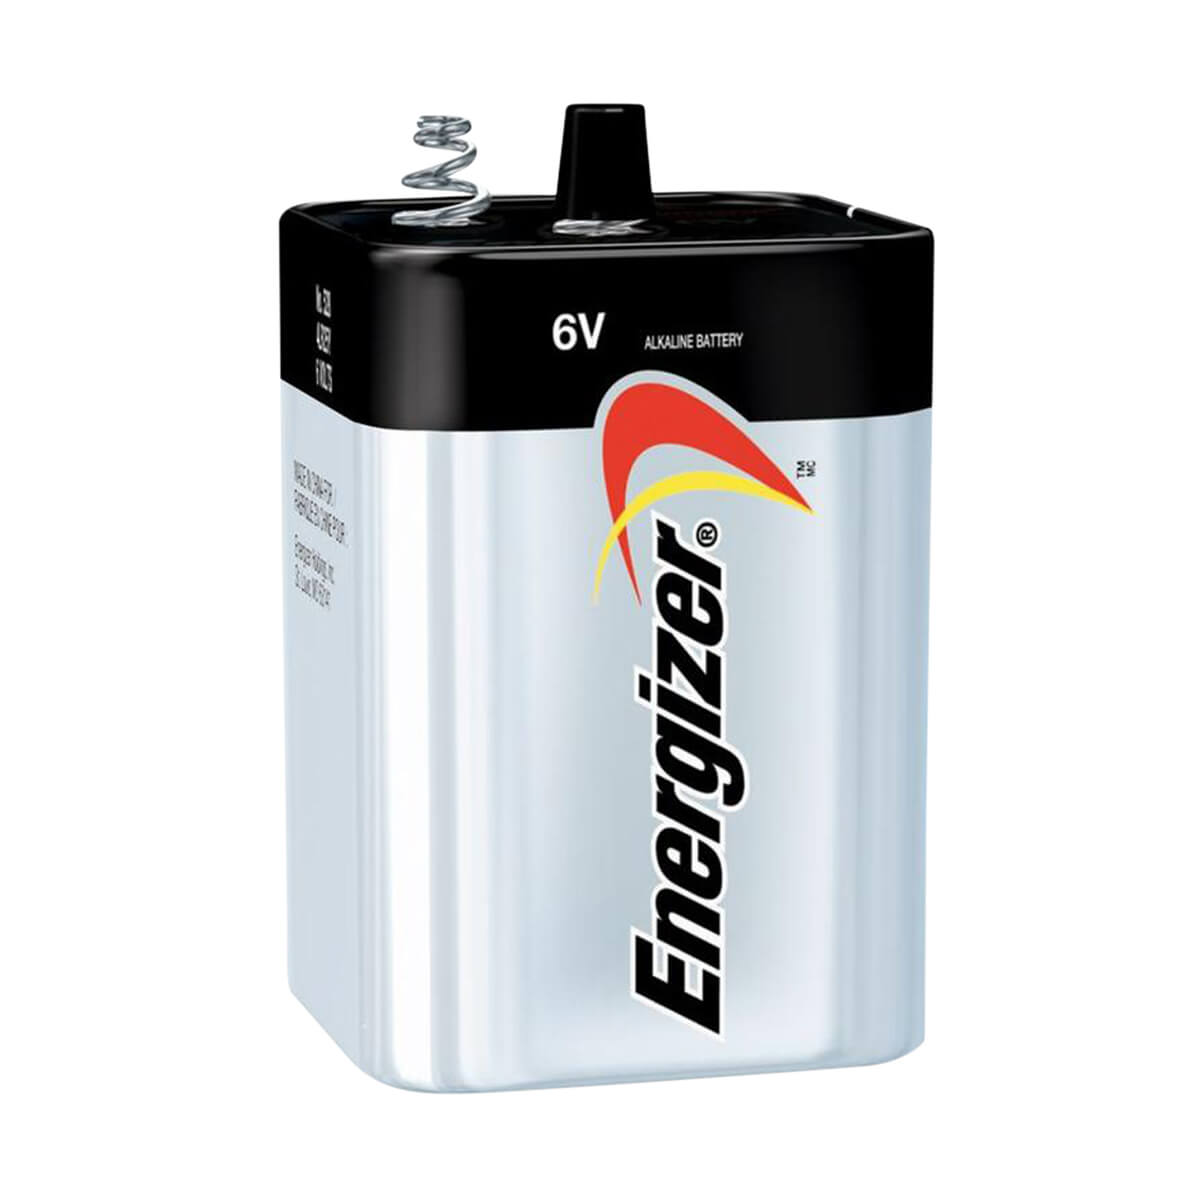 Energizer Alkaline Battery - 6v